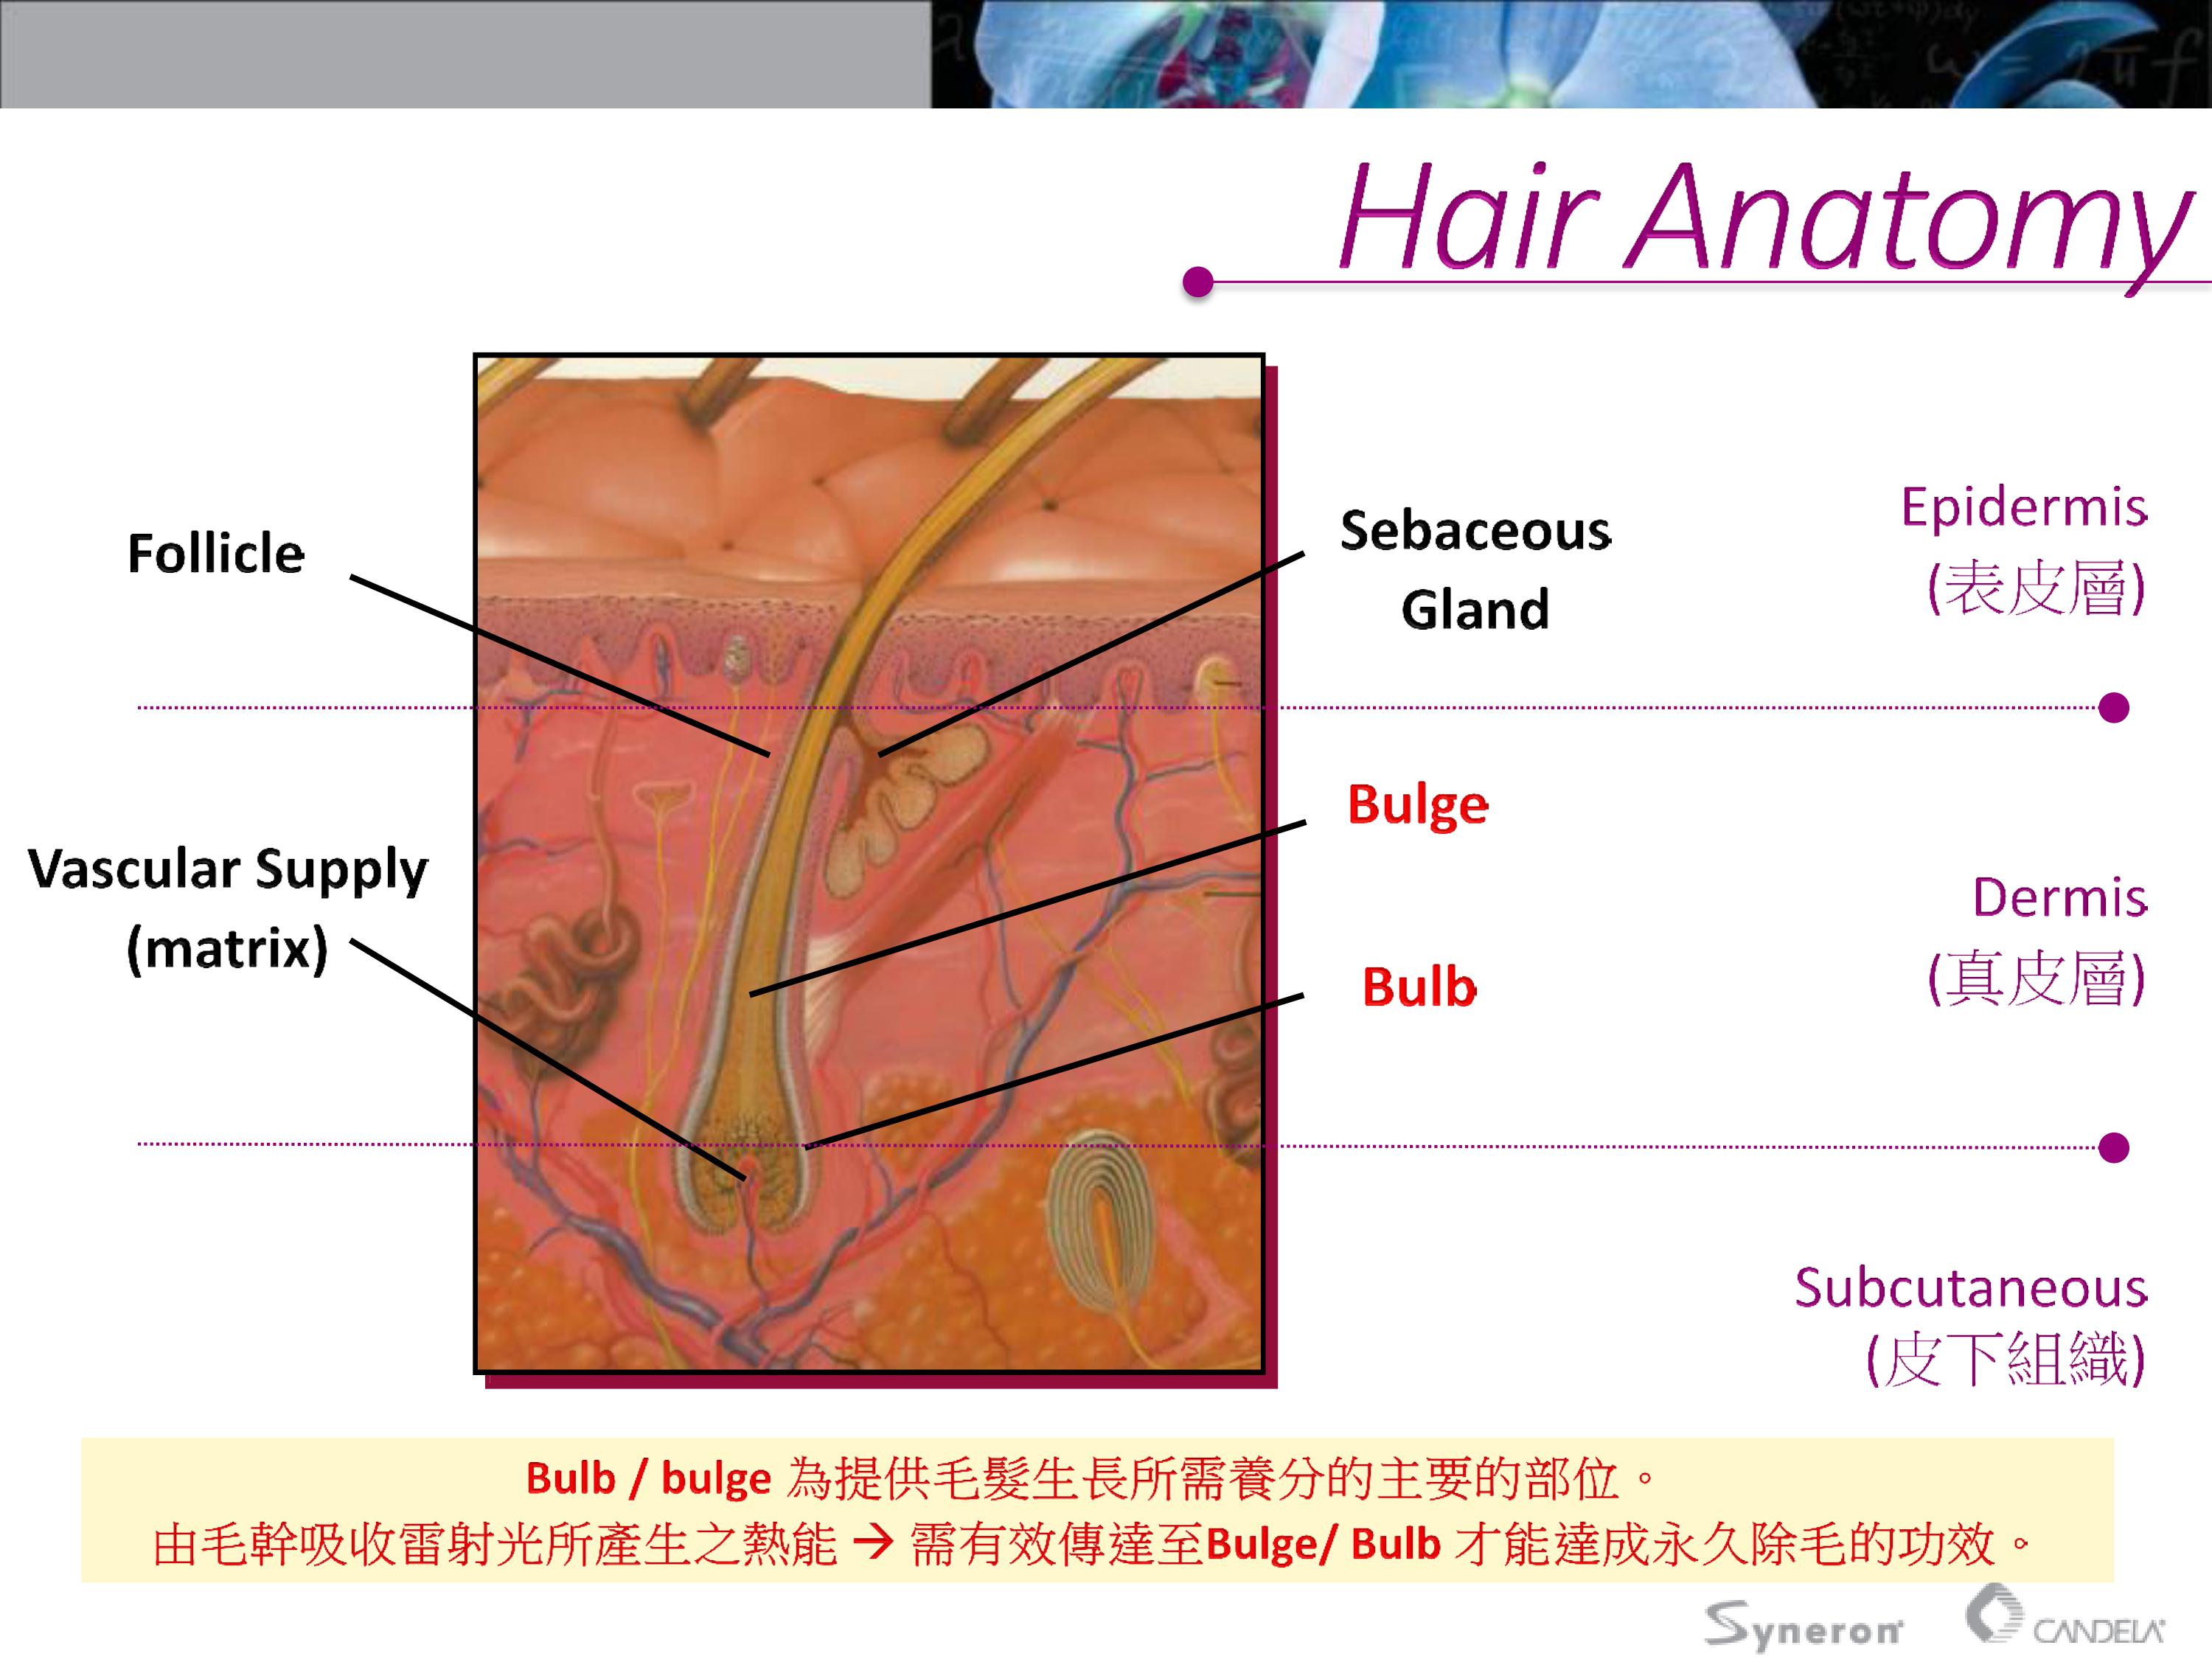 亞歷山大雷射，波長為755奈米(nm)，能將能量傳導至毛囊，破壞毛囊後續的生長能力。